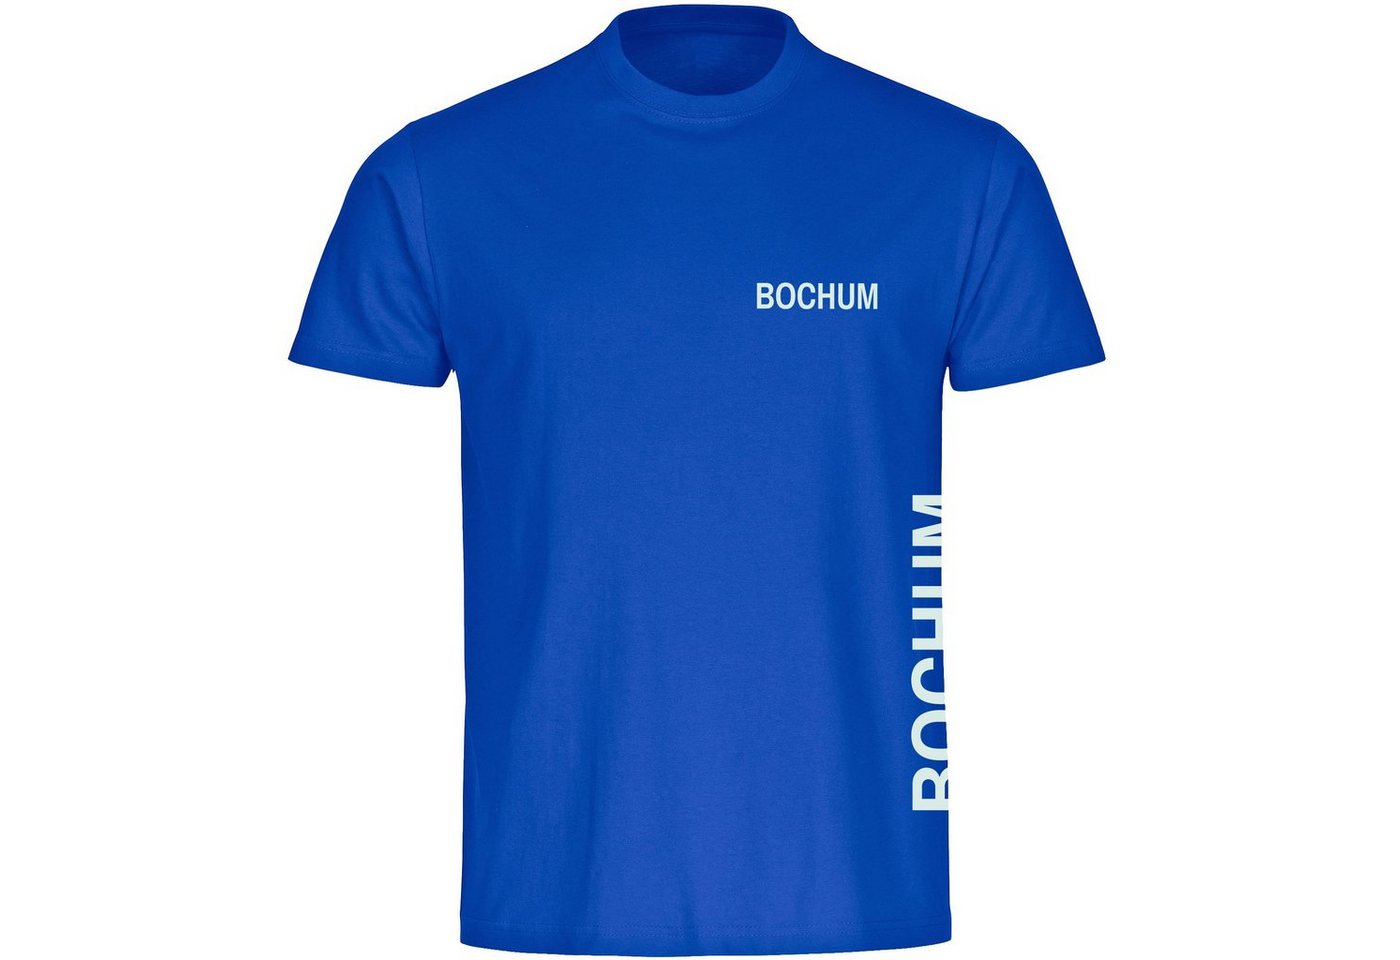 multifanshop T-Shirt Herren Bochum - Brust & Seite - Männer von multifanshop